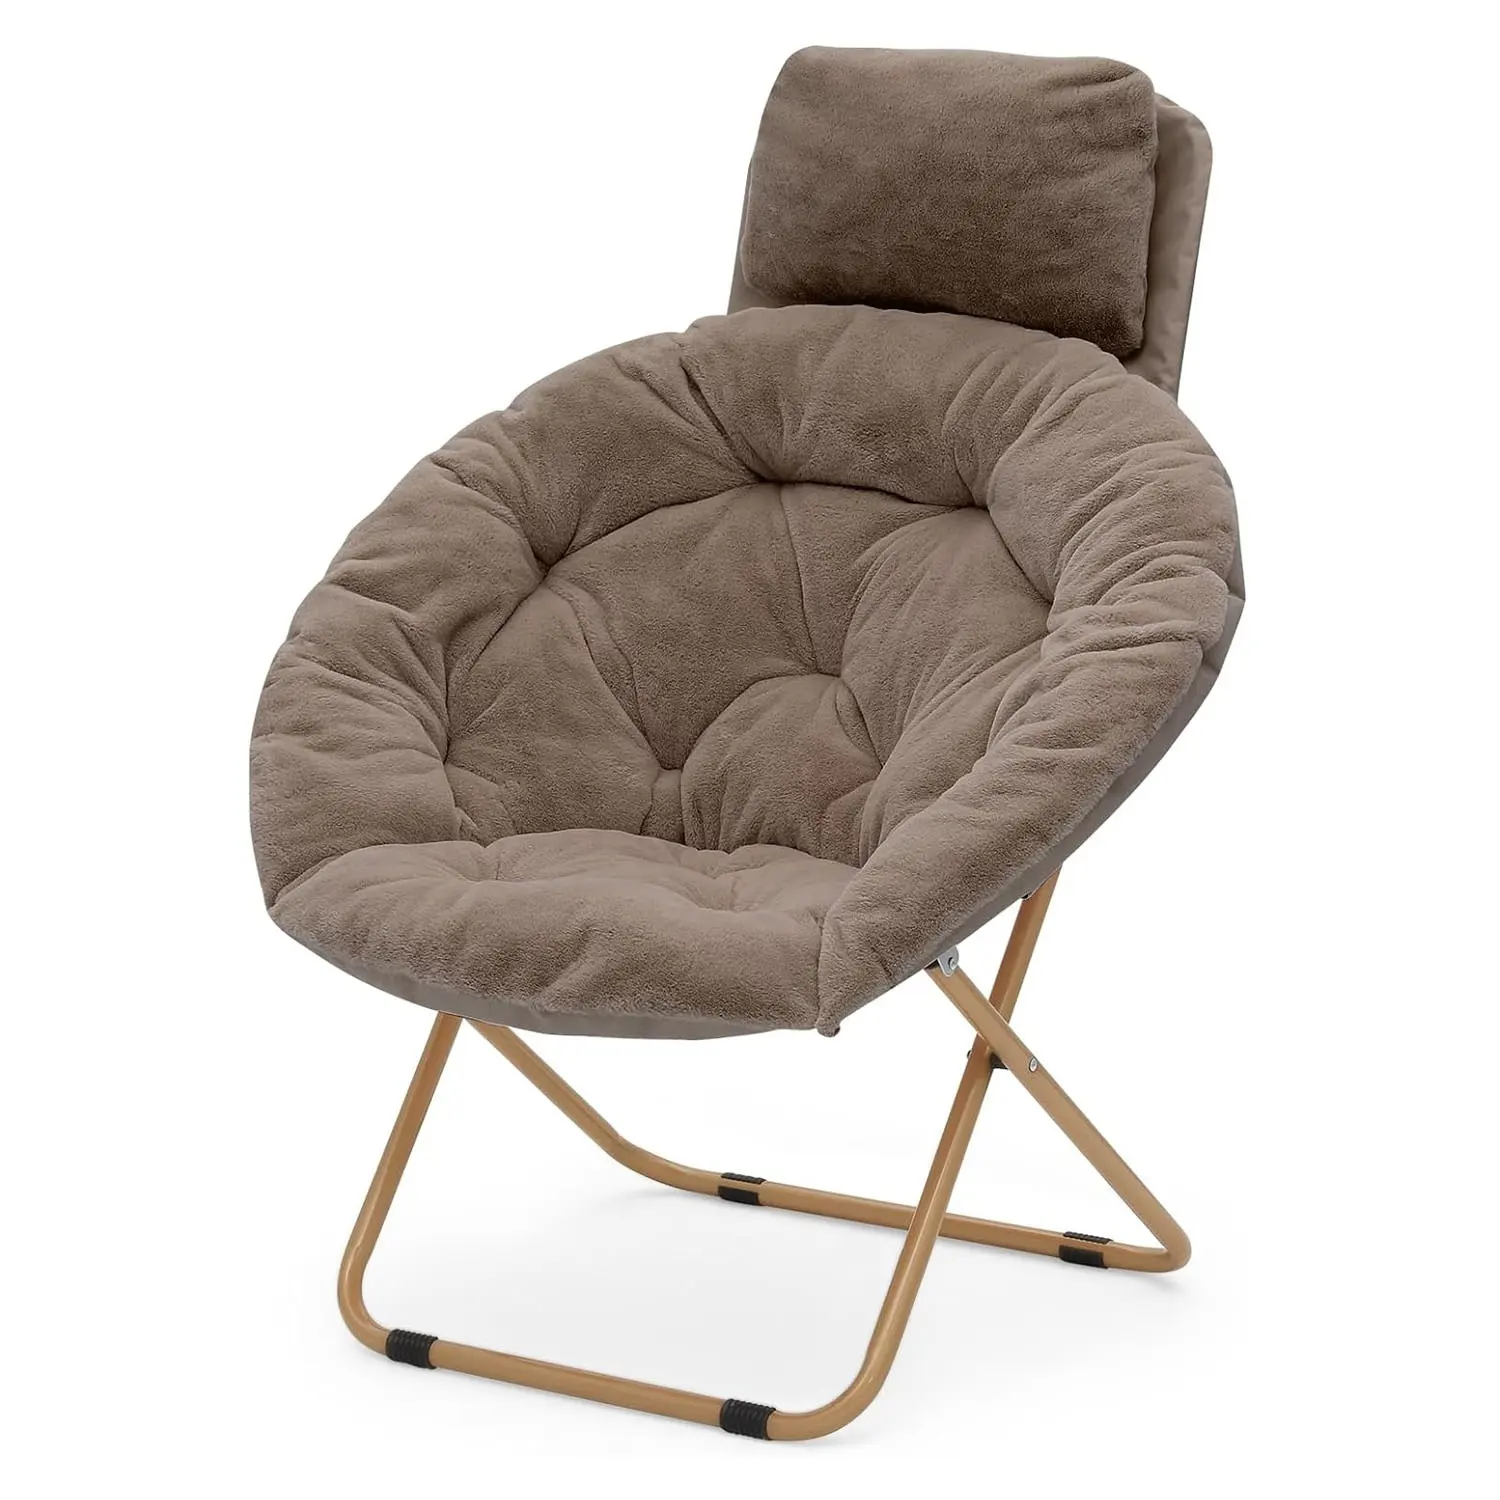 X-대형 접시 의자 프레임 접이식 달 의자 성인 실내 가구 금속 침실 가구 다리미 현대 계란 문 의자